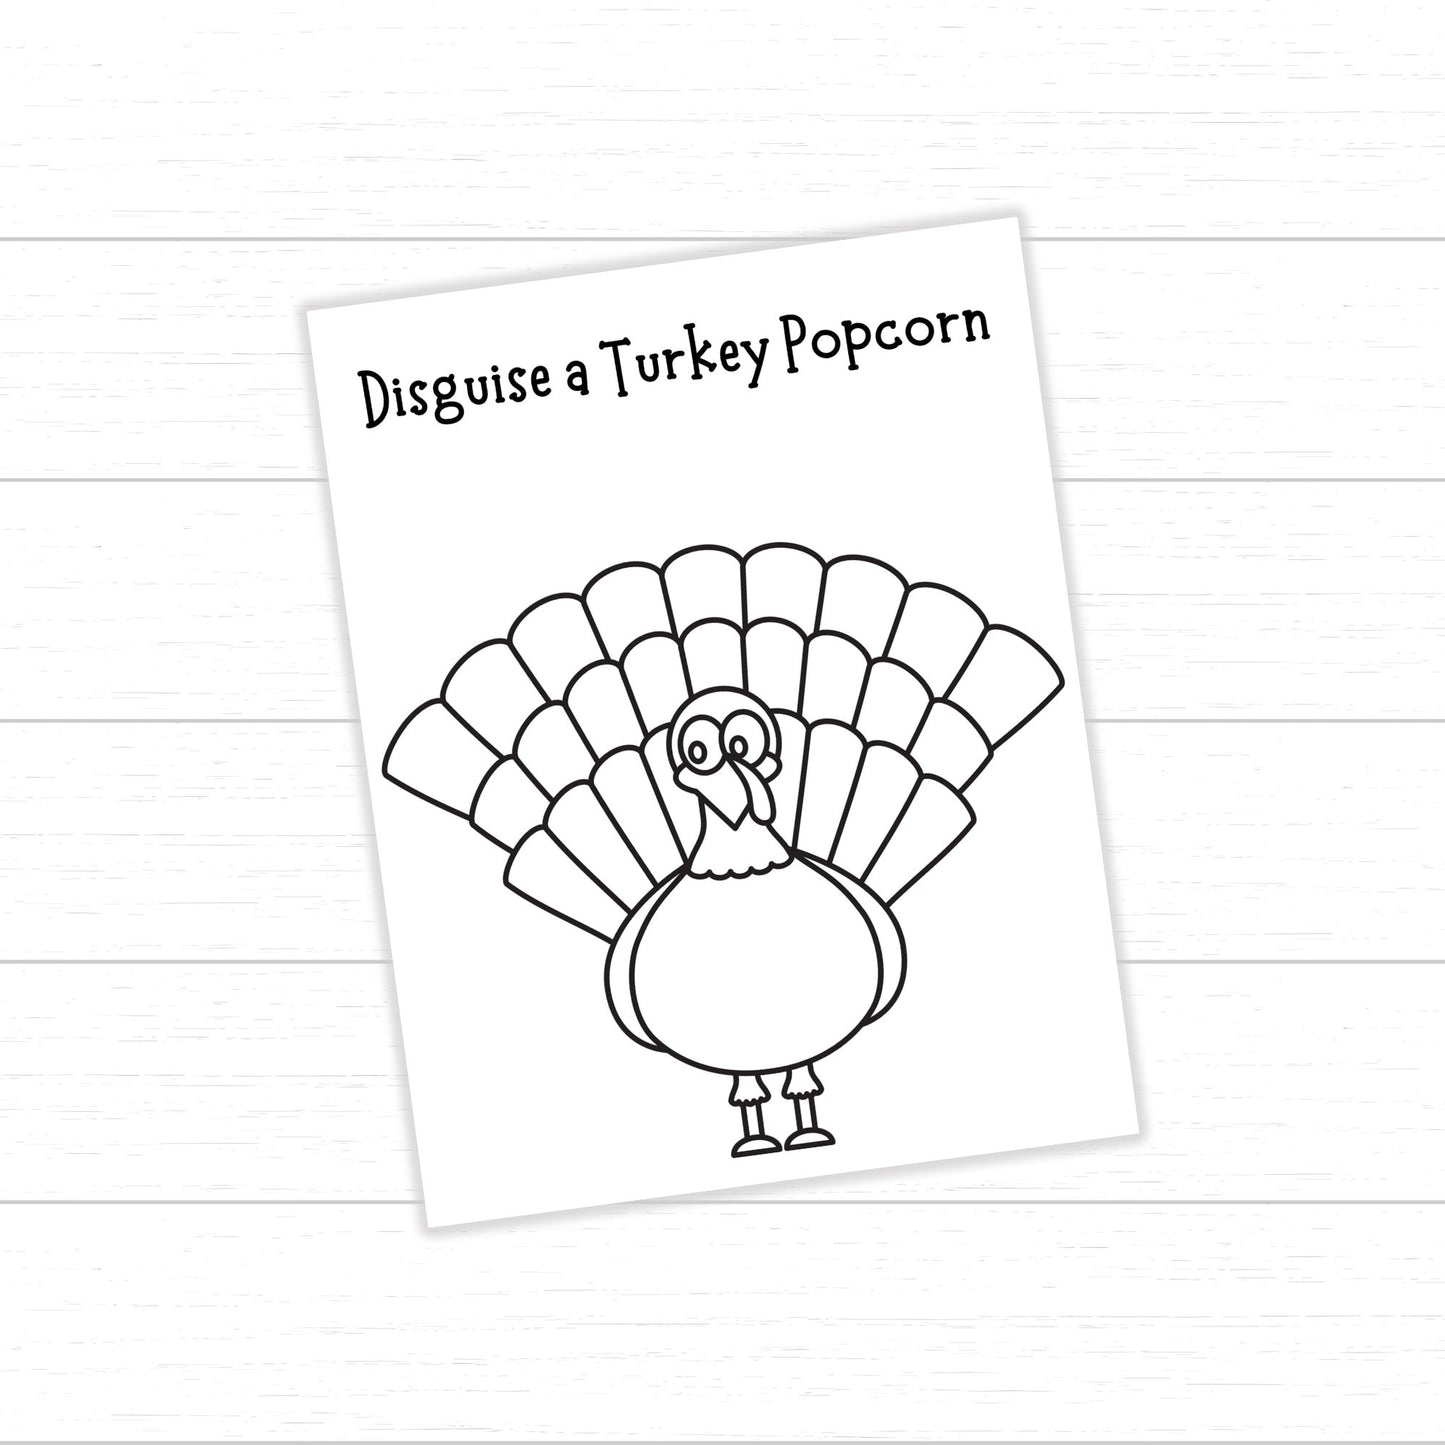 Disguise a Turkey Popcorn, Turkey in Disguise Popcorn, Popcorn Turkey, Turkey Popcorn Disguise, Turkey Activity, Disguise a Turkey Project